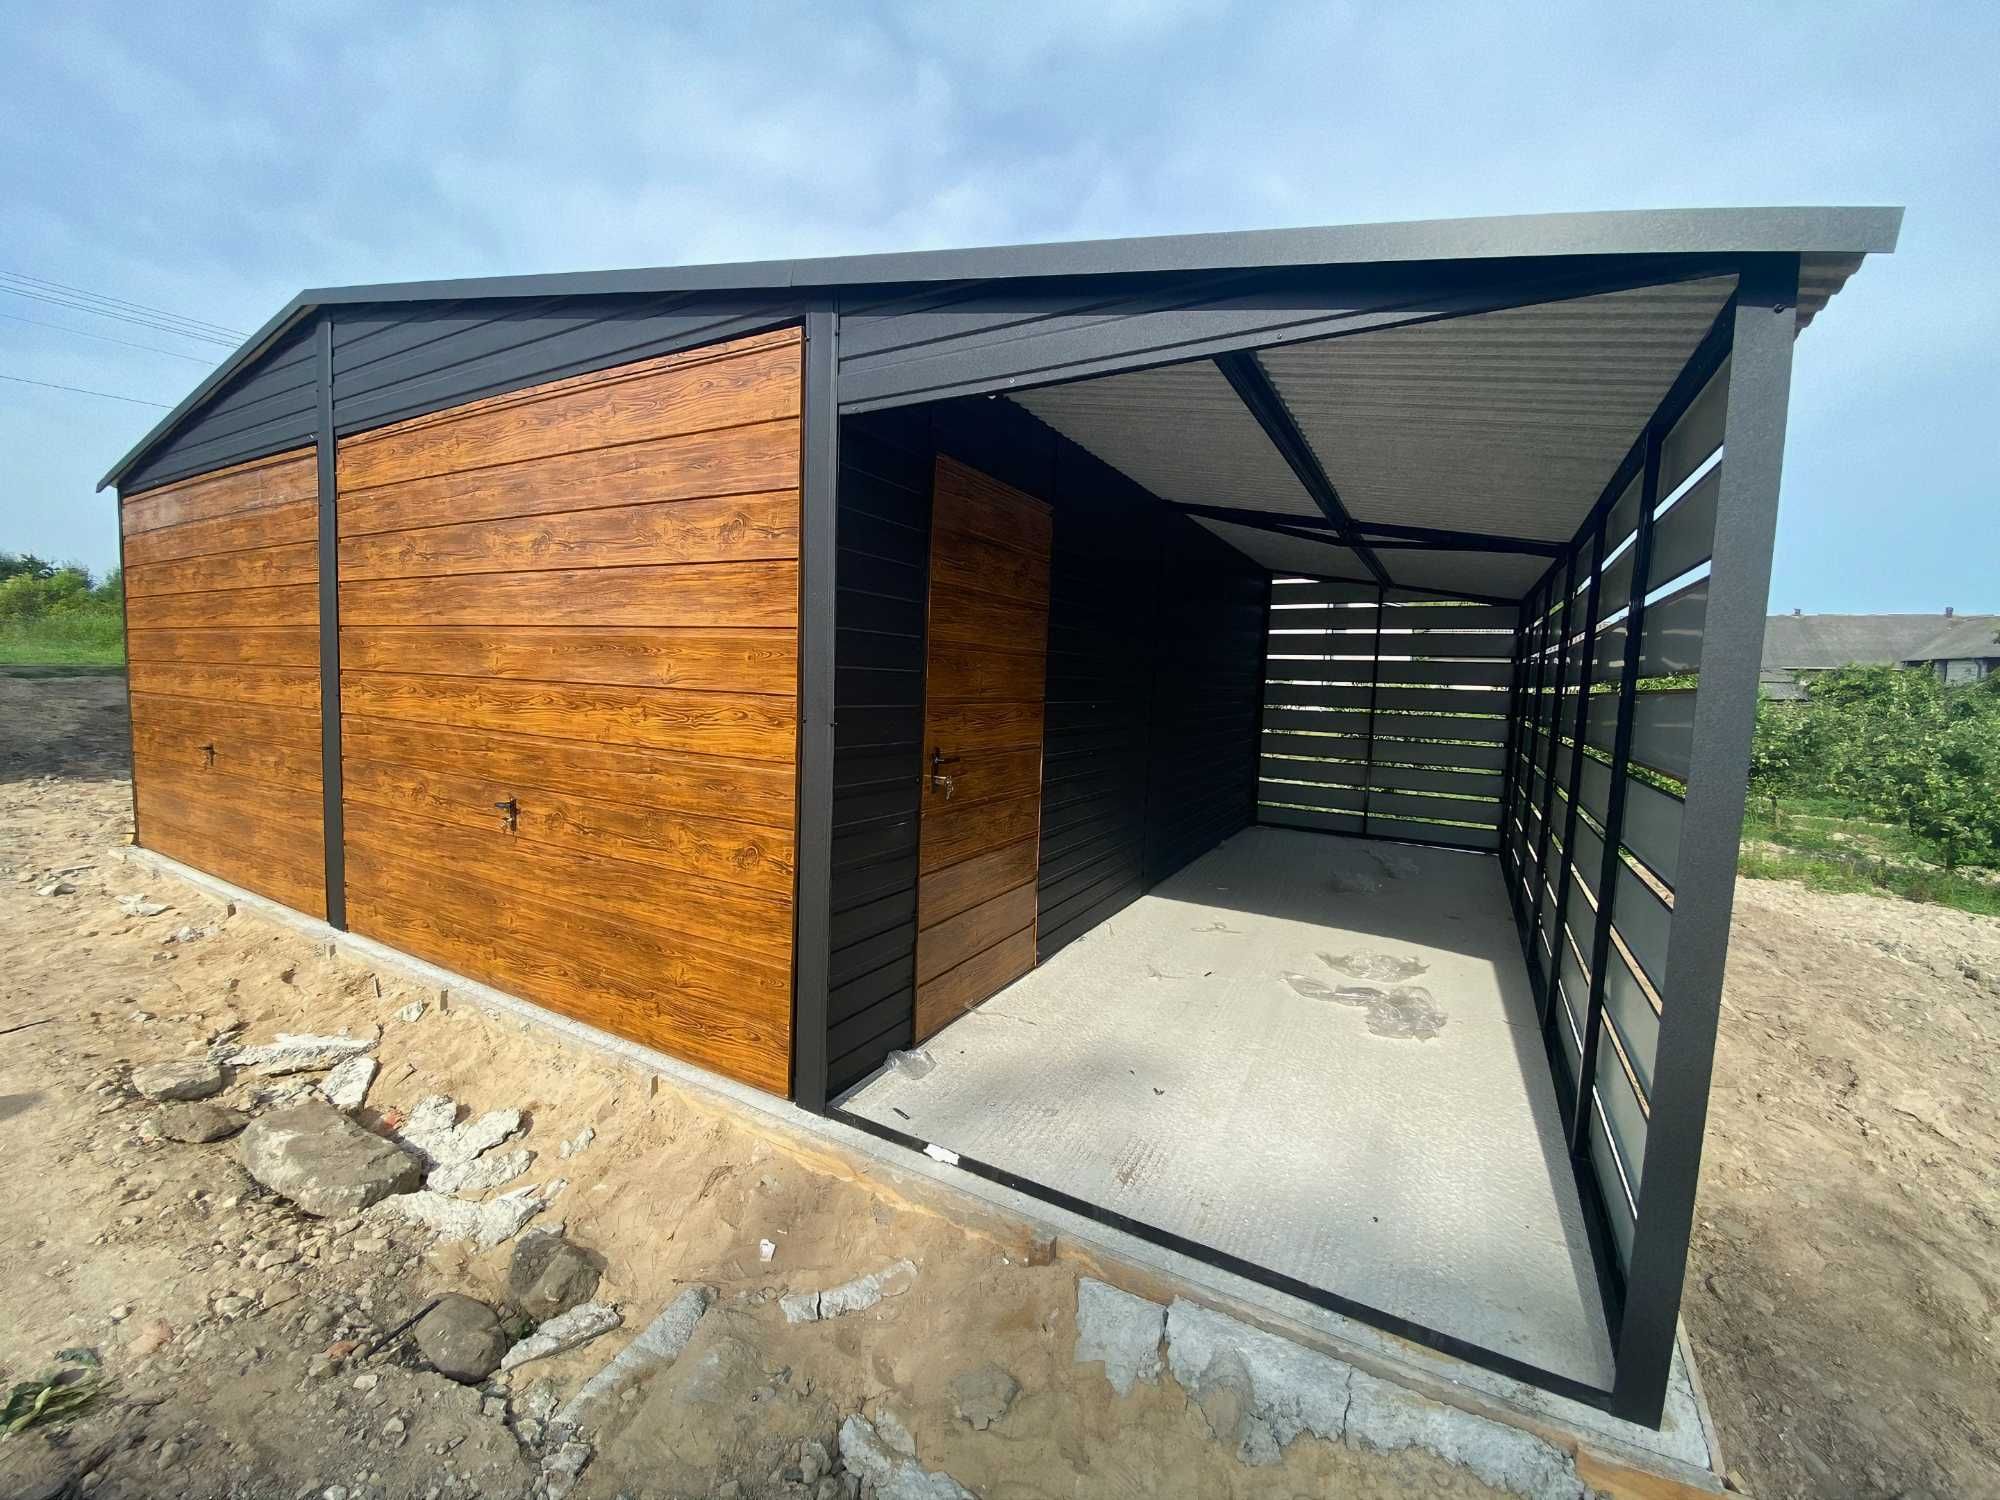 Drewnopodobny domek garaż blaszany wiata hala garaz 8x6m |9x5 10x6|